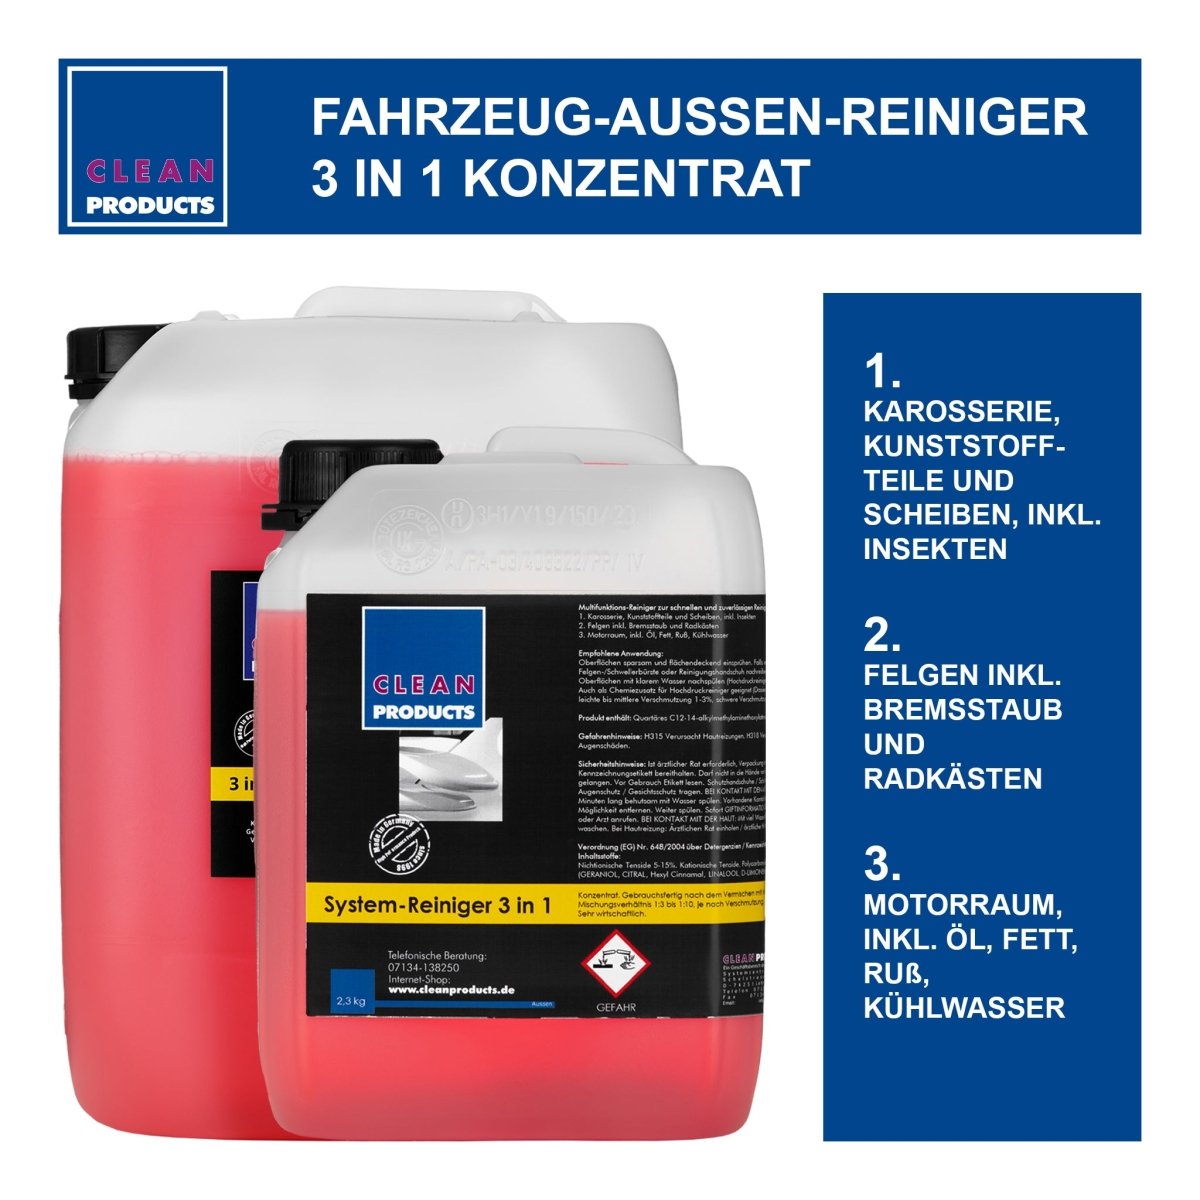 Fahrzeug-Außen-Reiniger 3 in 1 (Konzentrat) -10 Liter - CLEANPRODUCTS